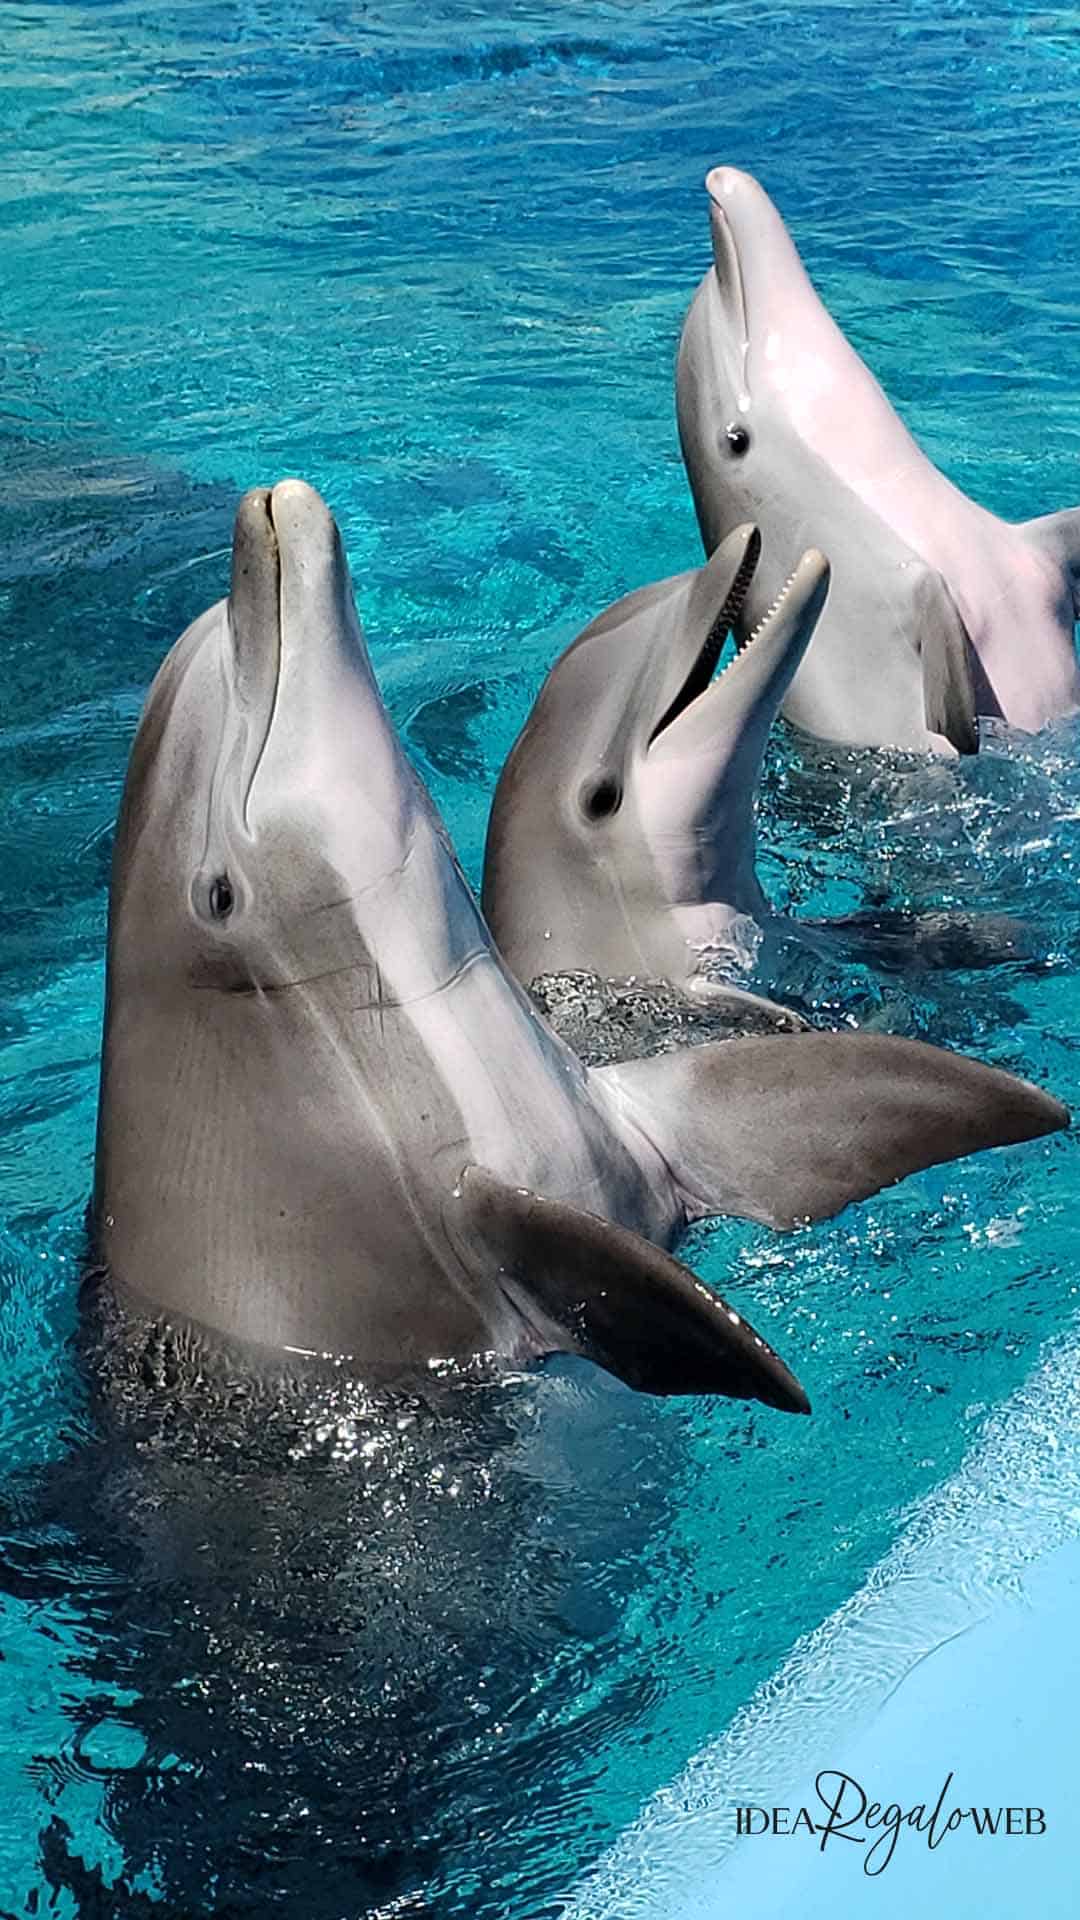 Idee regalo delfino - VETRINA - 1080x1920 idearegaloweb